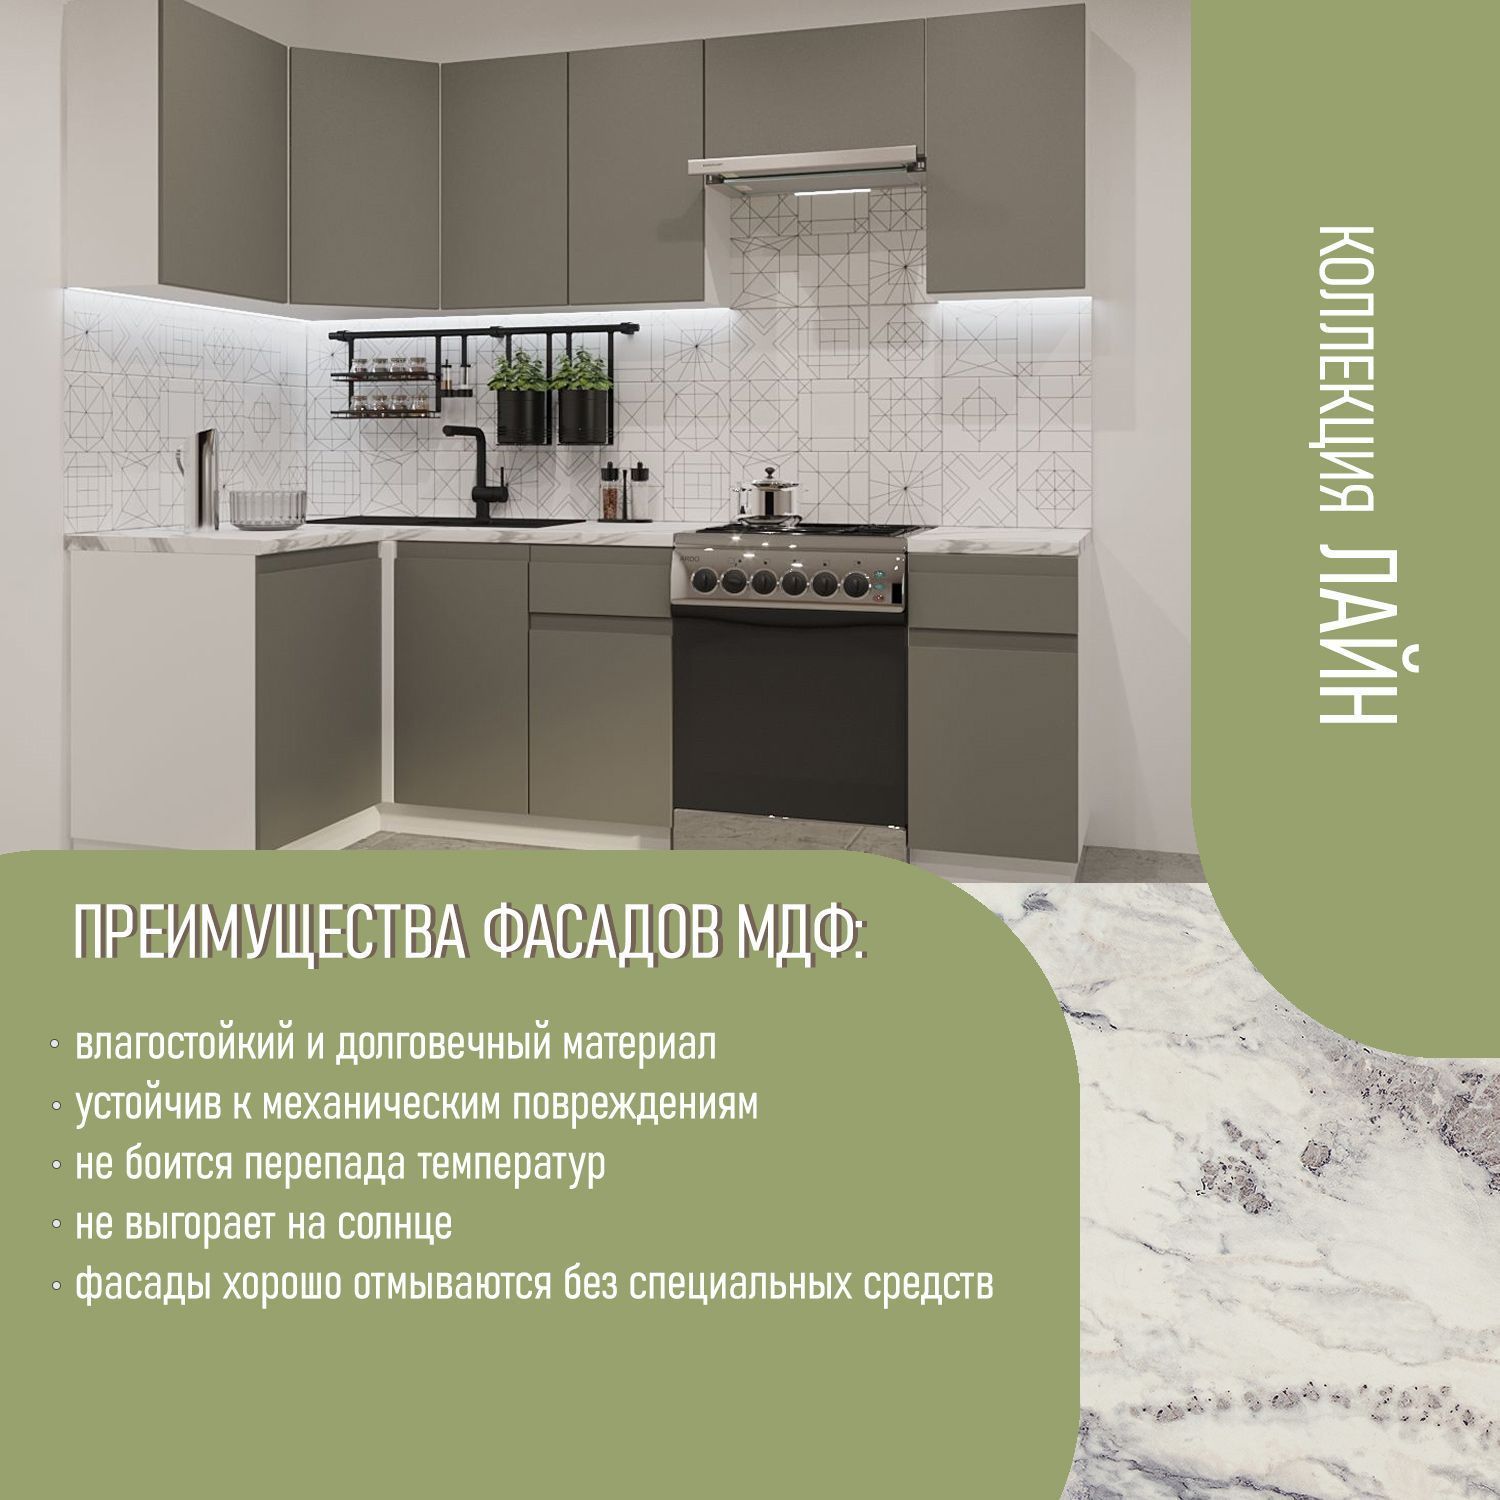 Обзор модульных домов: особенности строительства, плюсы и минусы | aikimaster.ru